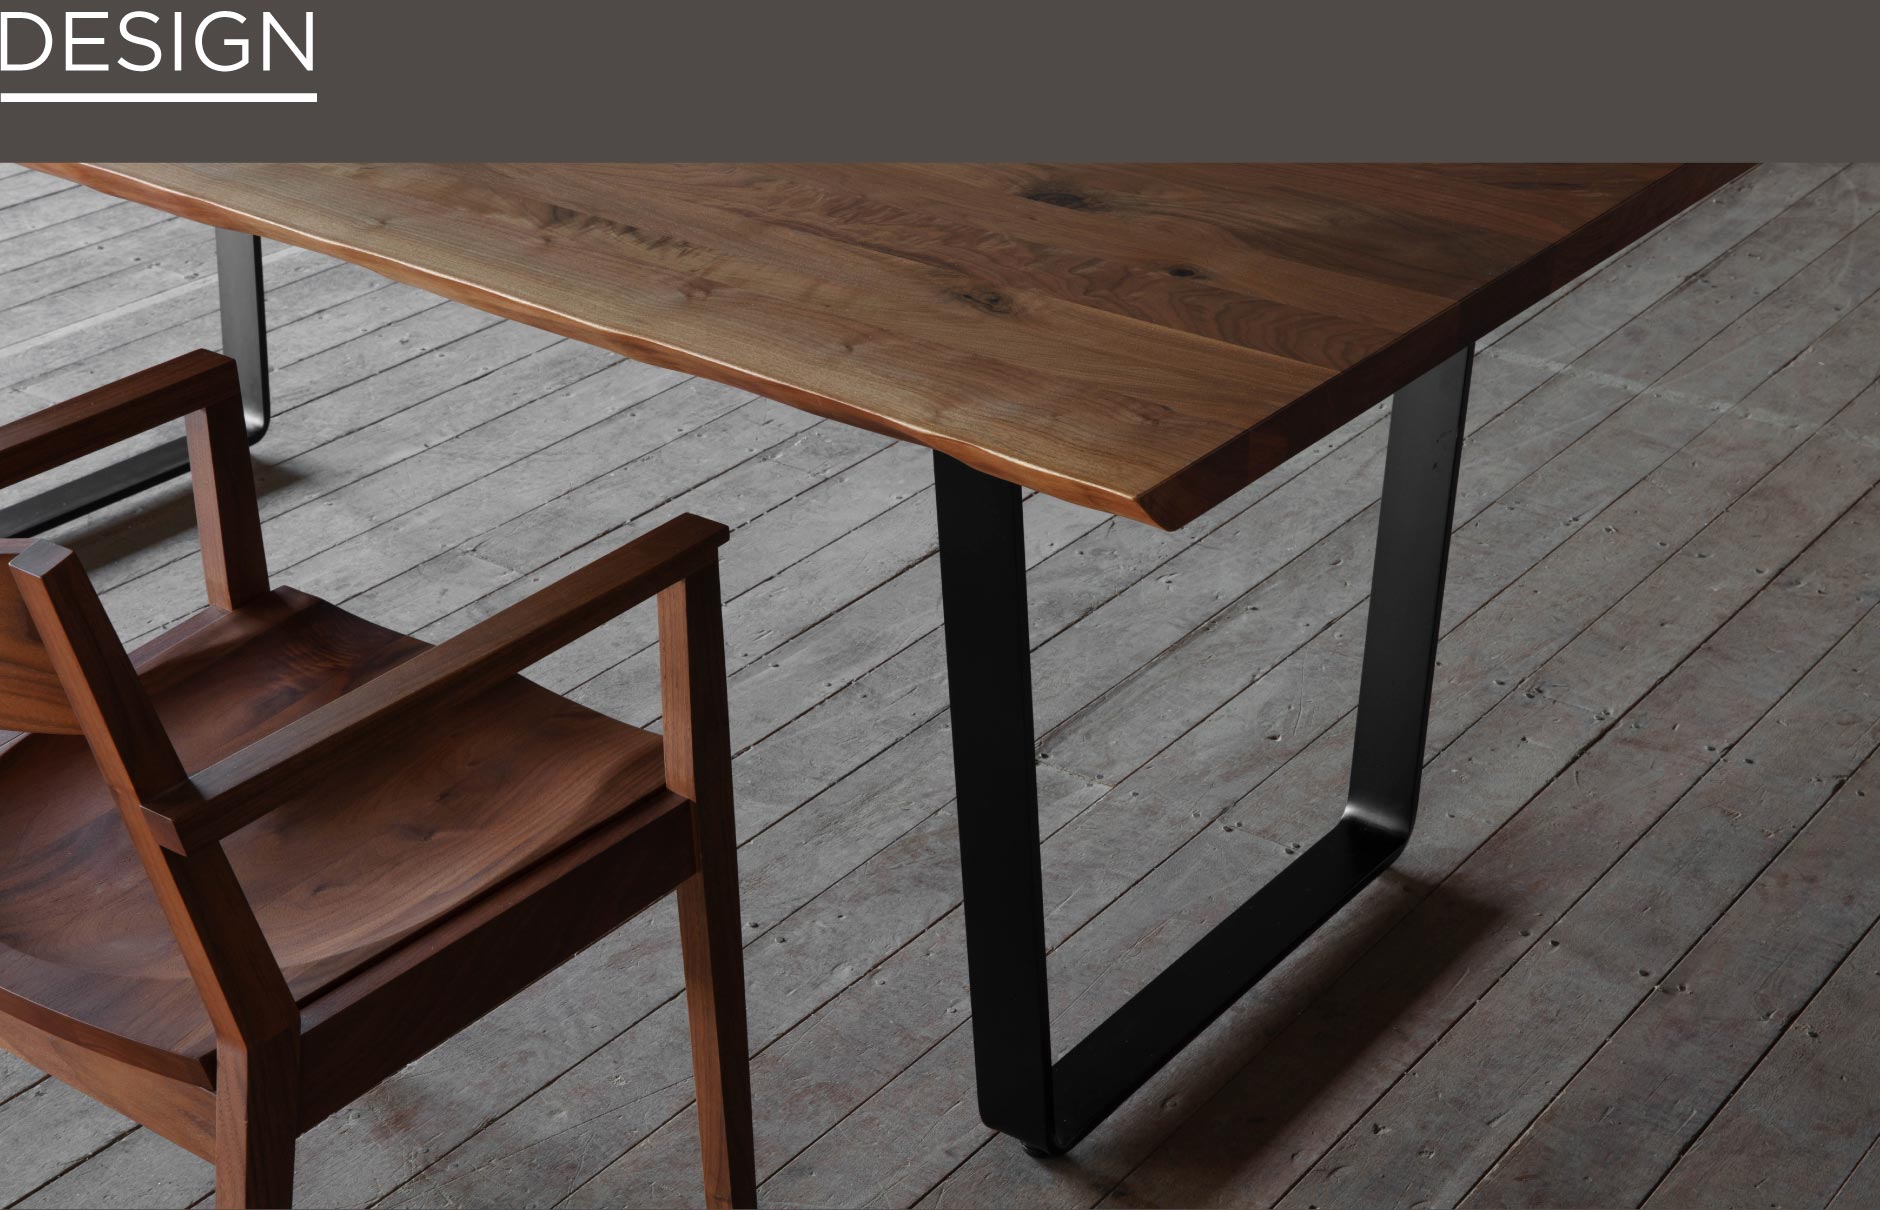 無垢材温もりとスチール脚の無機質さ。異素材の組み合わせが重厚感を醸し出します。SOLID福岡の家具の中でも人気のダイニングテーブル。